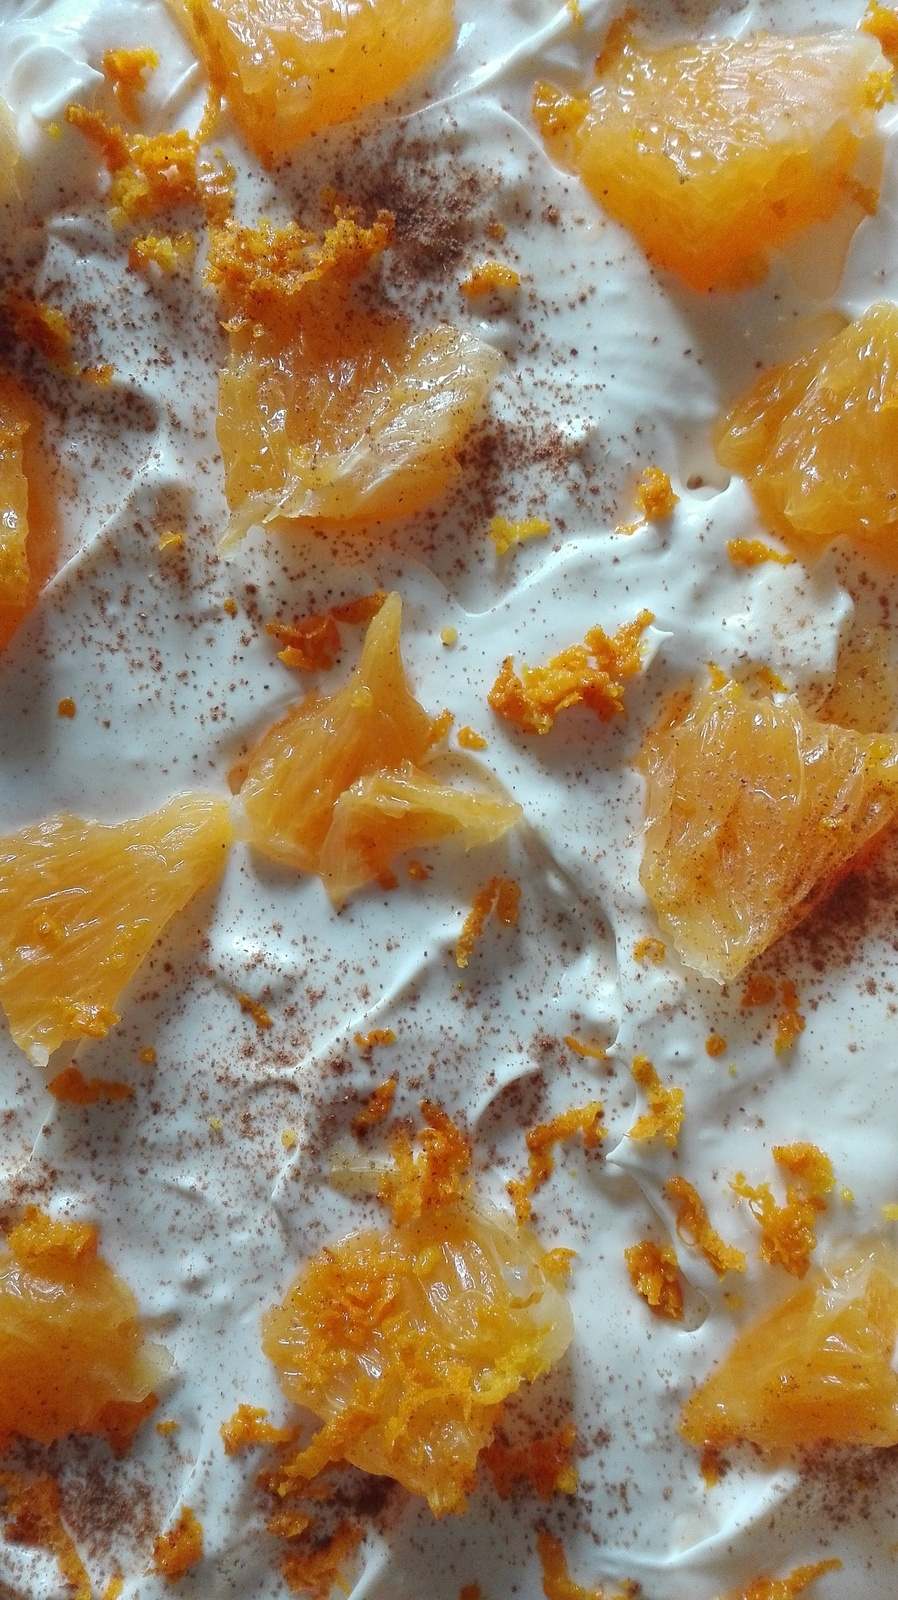 Tiramisu de naranja y panela - un postre delicioso